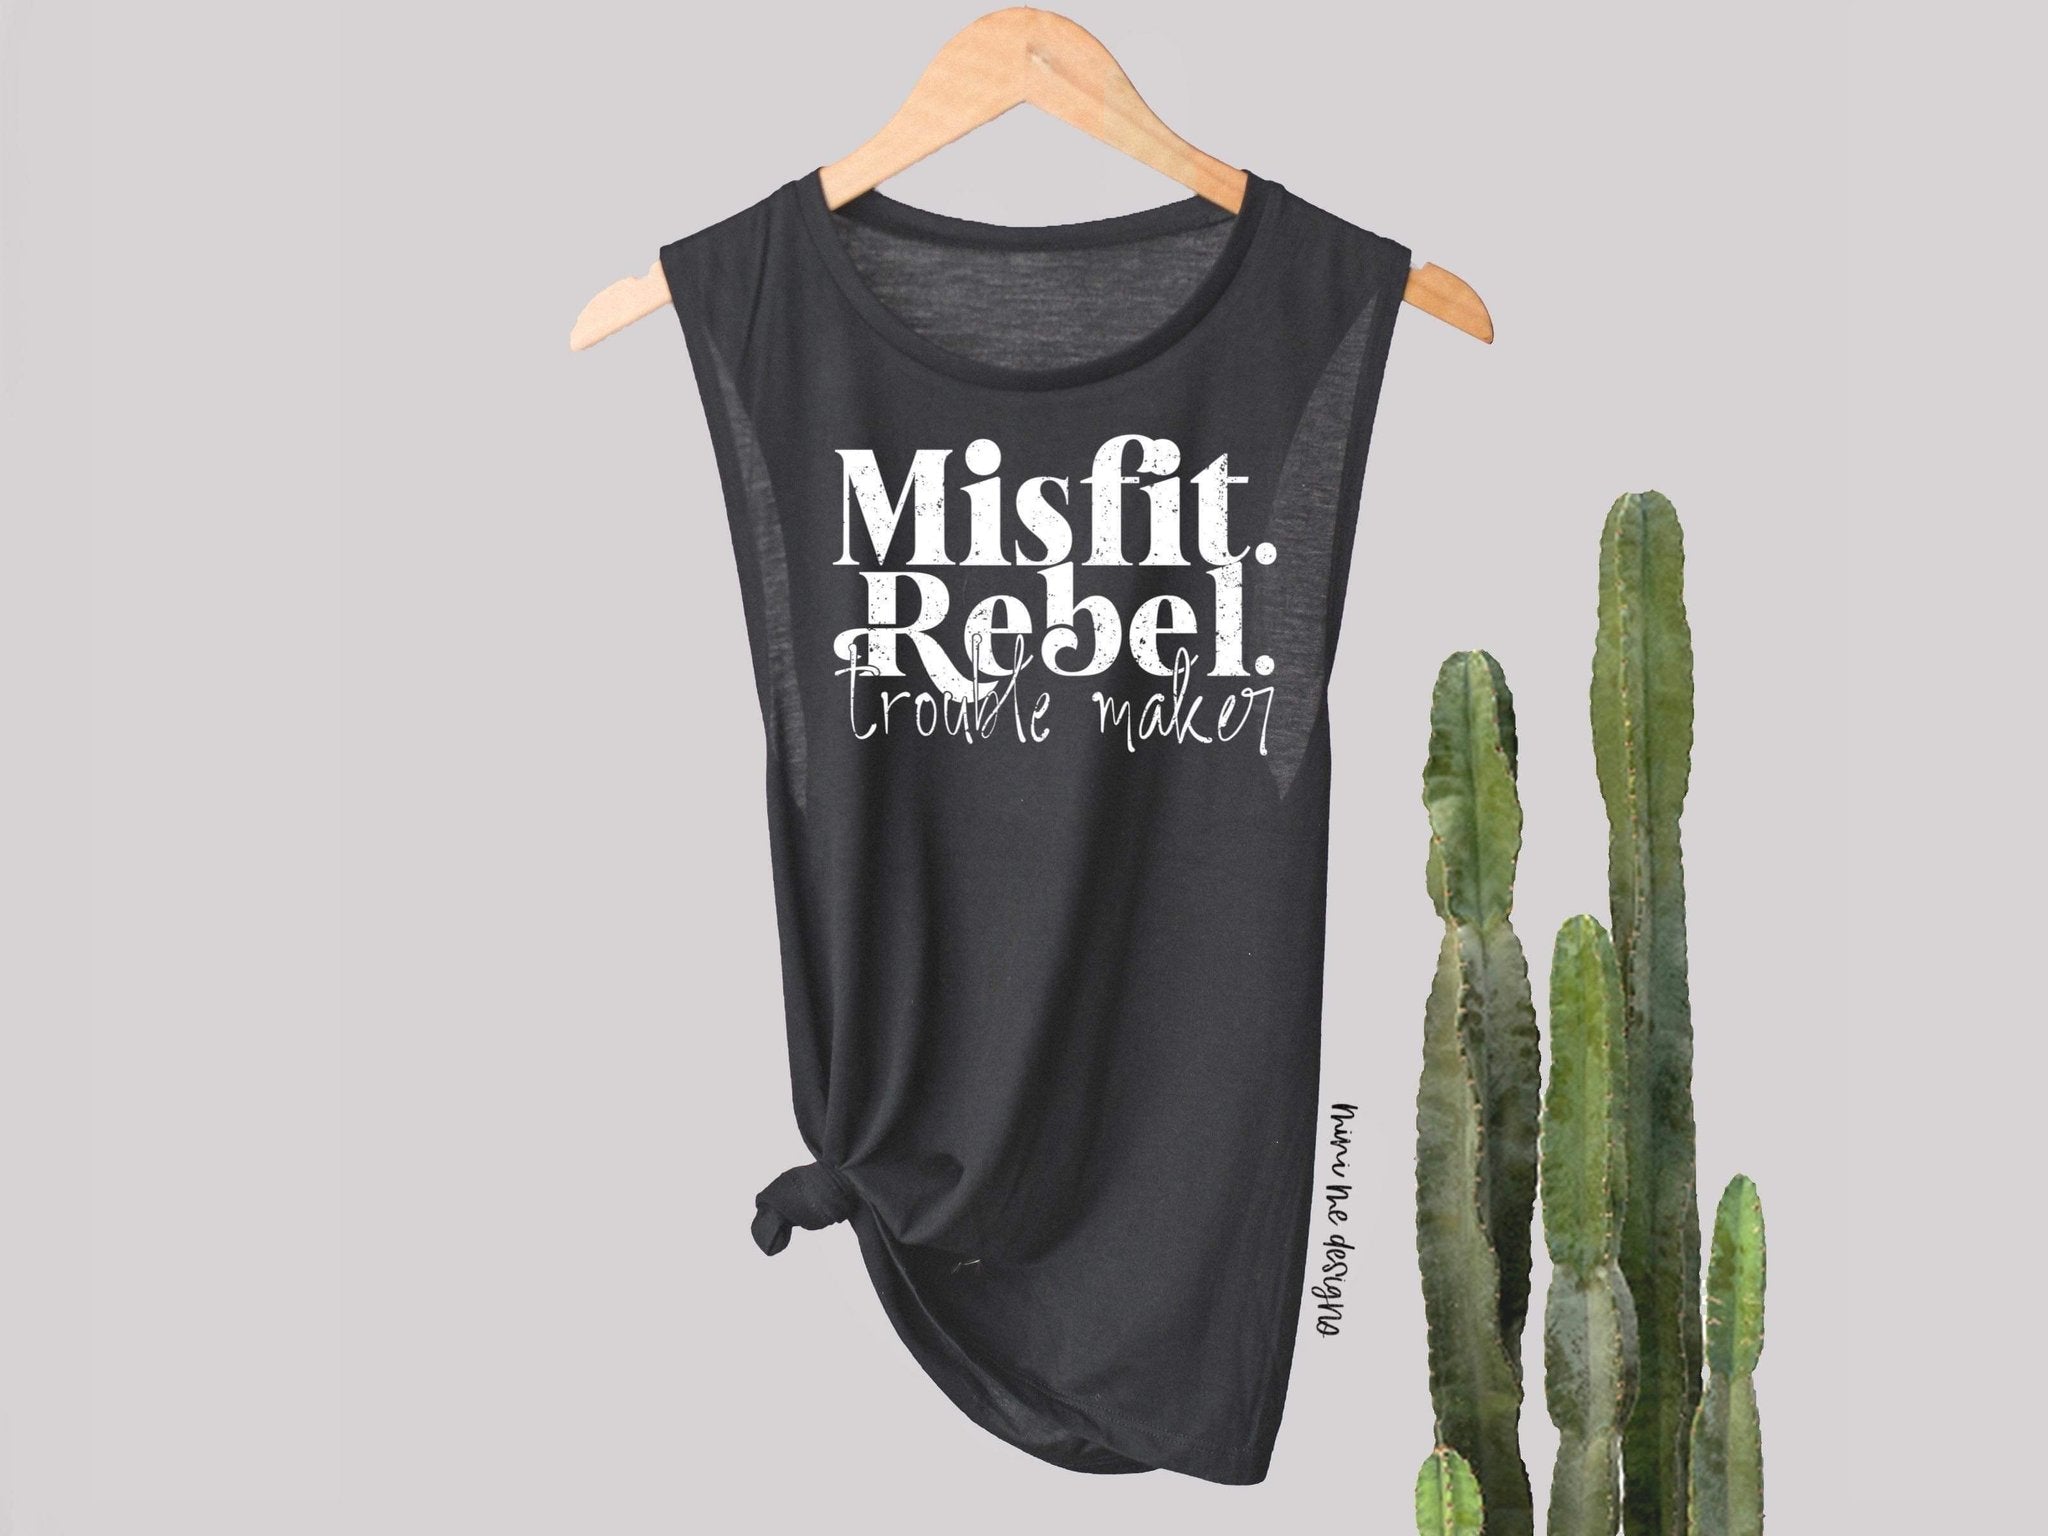 Misfit. Rebel, Trouble Maker Screen Print Top Design